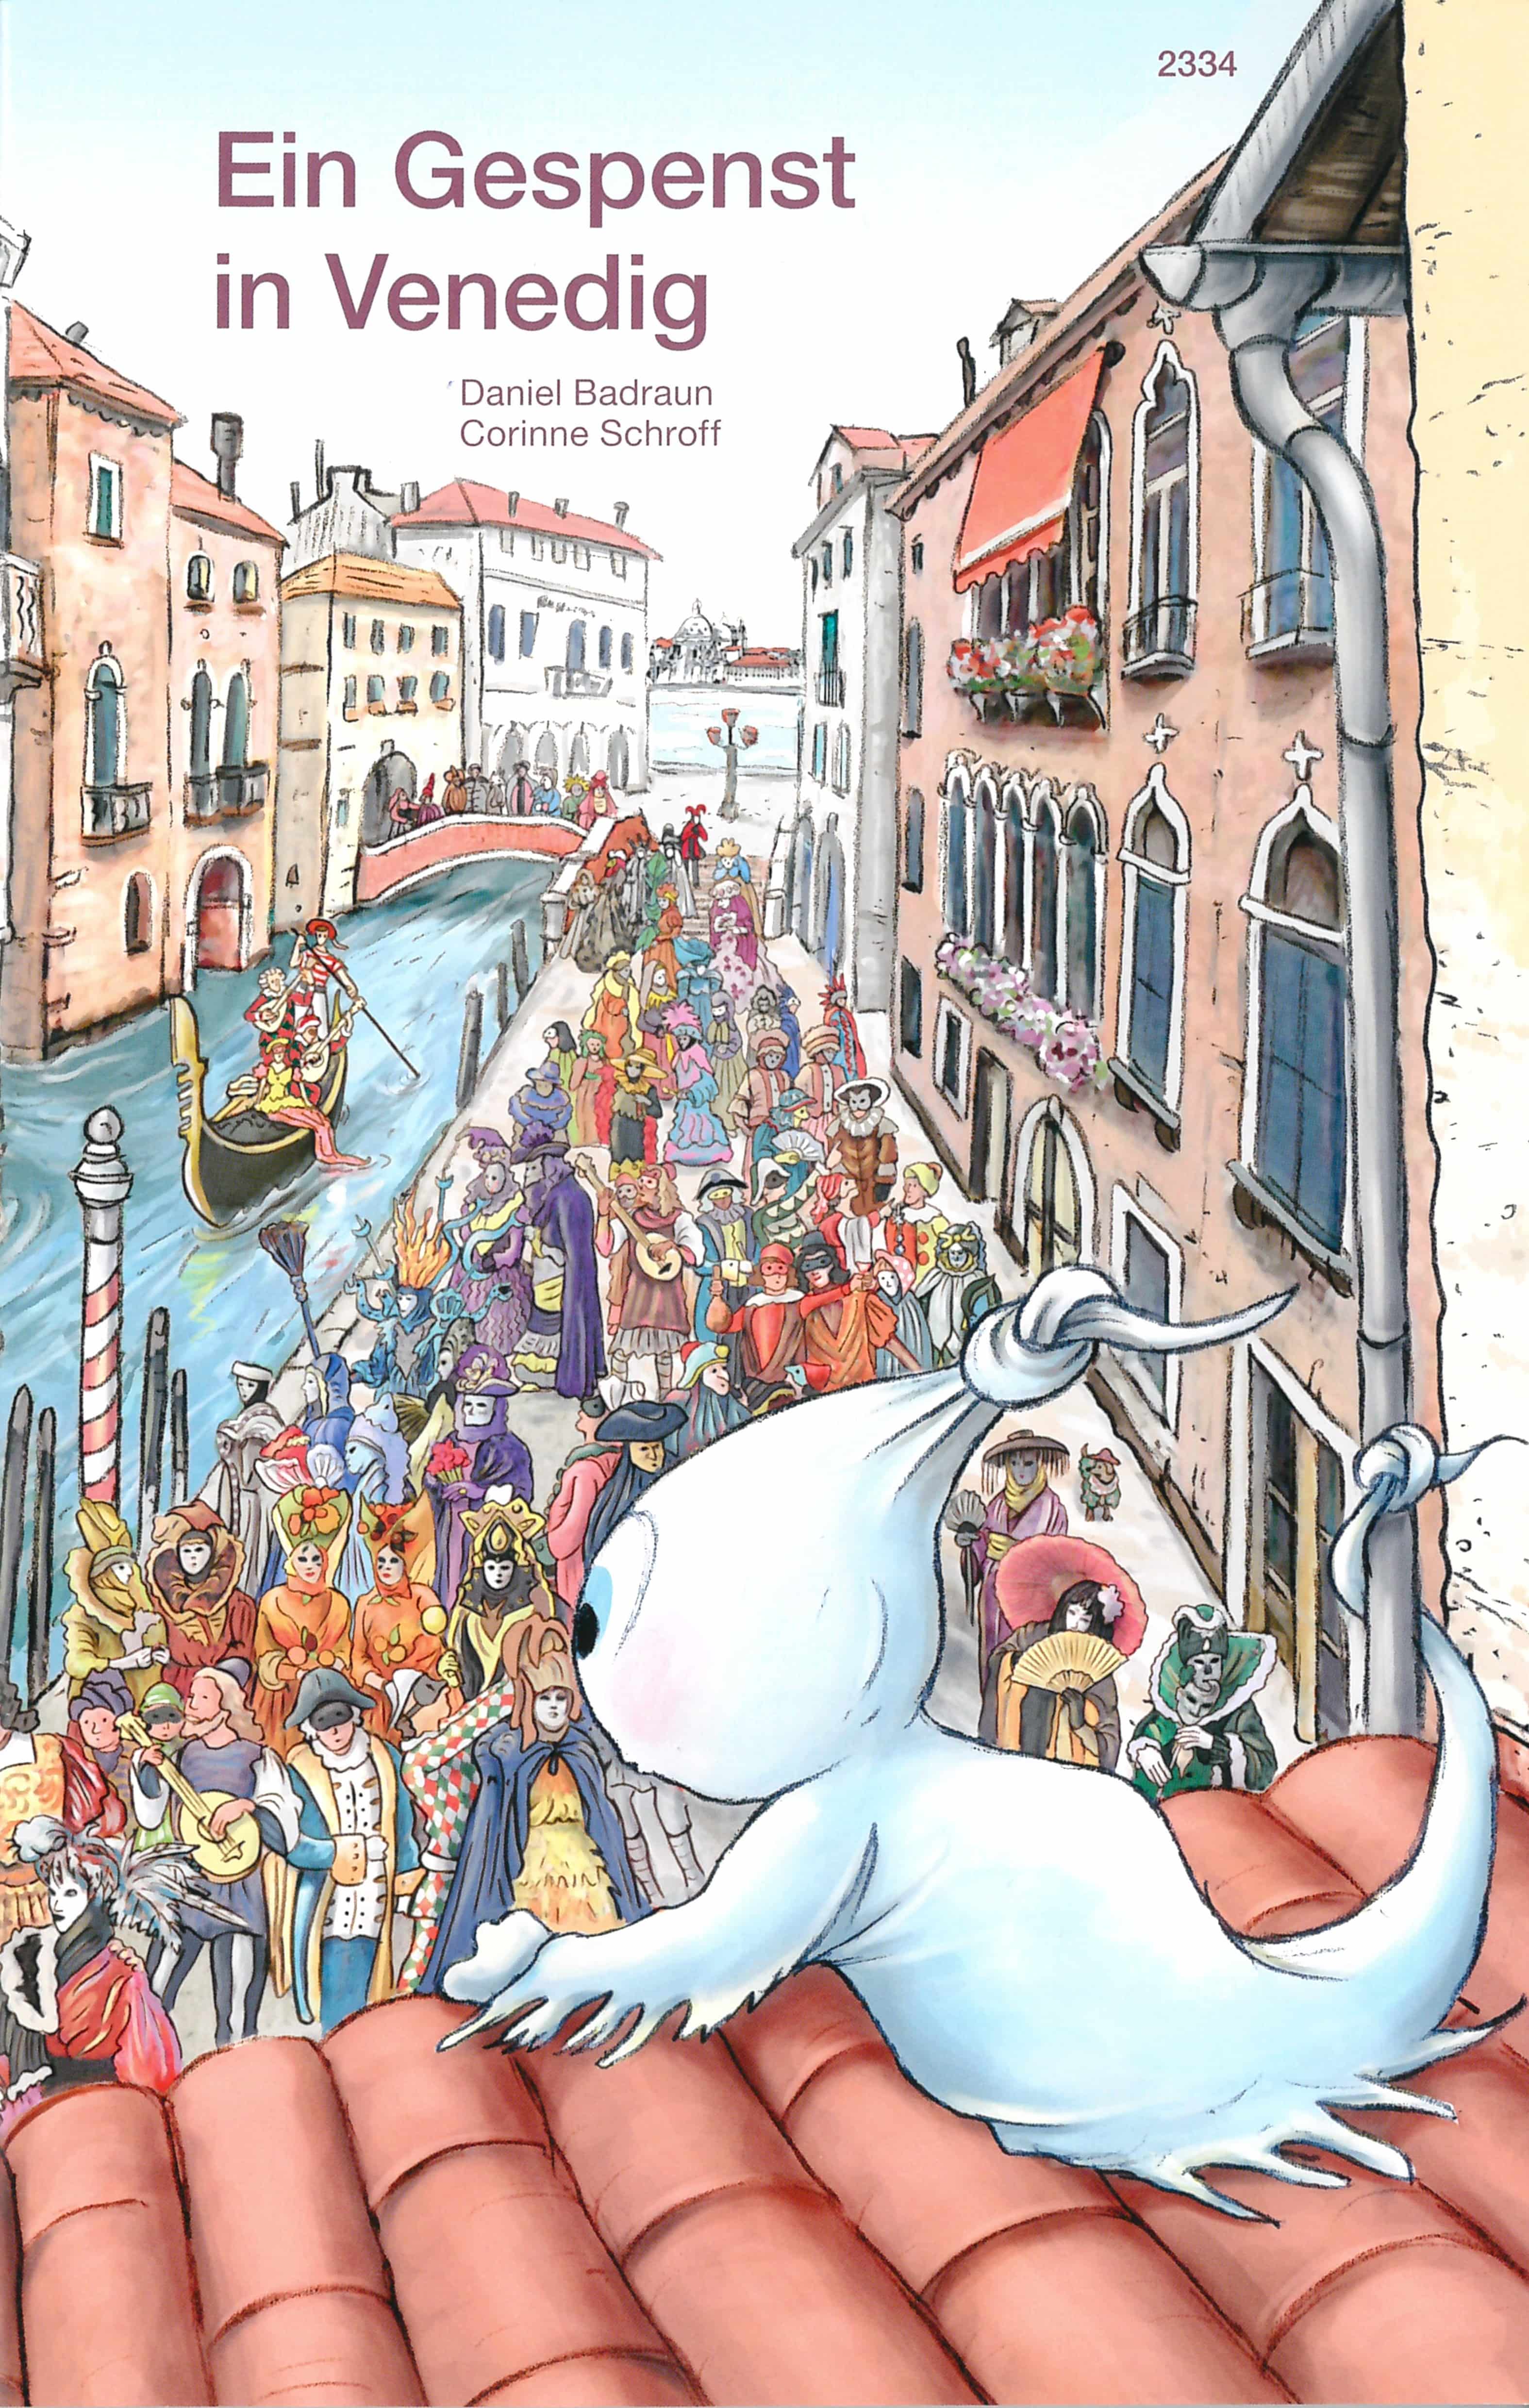 Ein Gespenst in Venedig, ein Kinderbuch von Daniel Badraun, Illustration von Corinne Schroff, SJW Verlag, Gespenstergeschichte